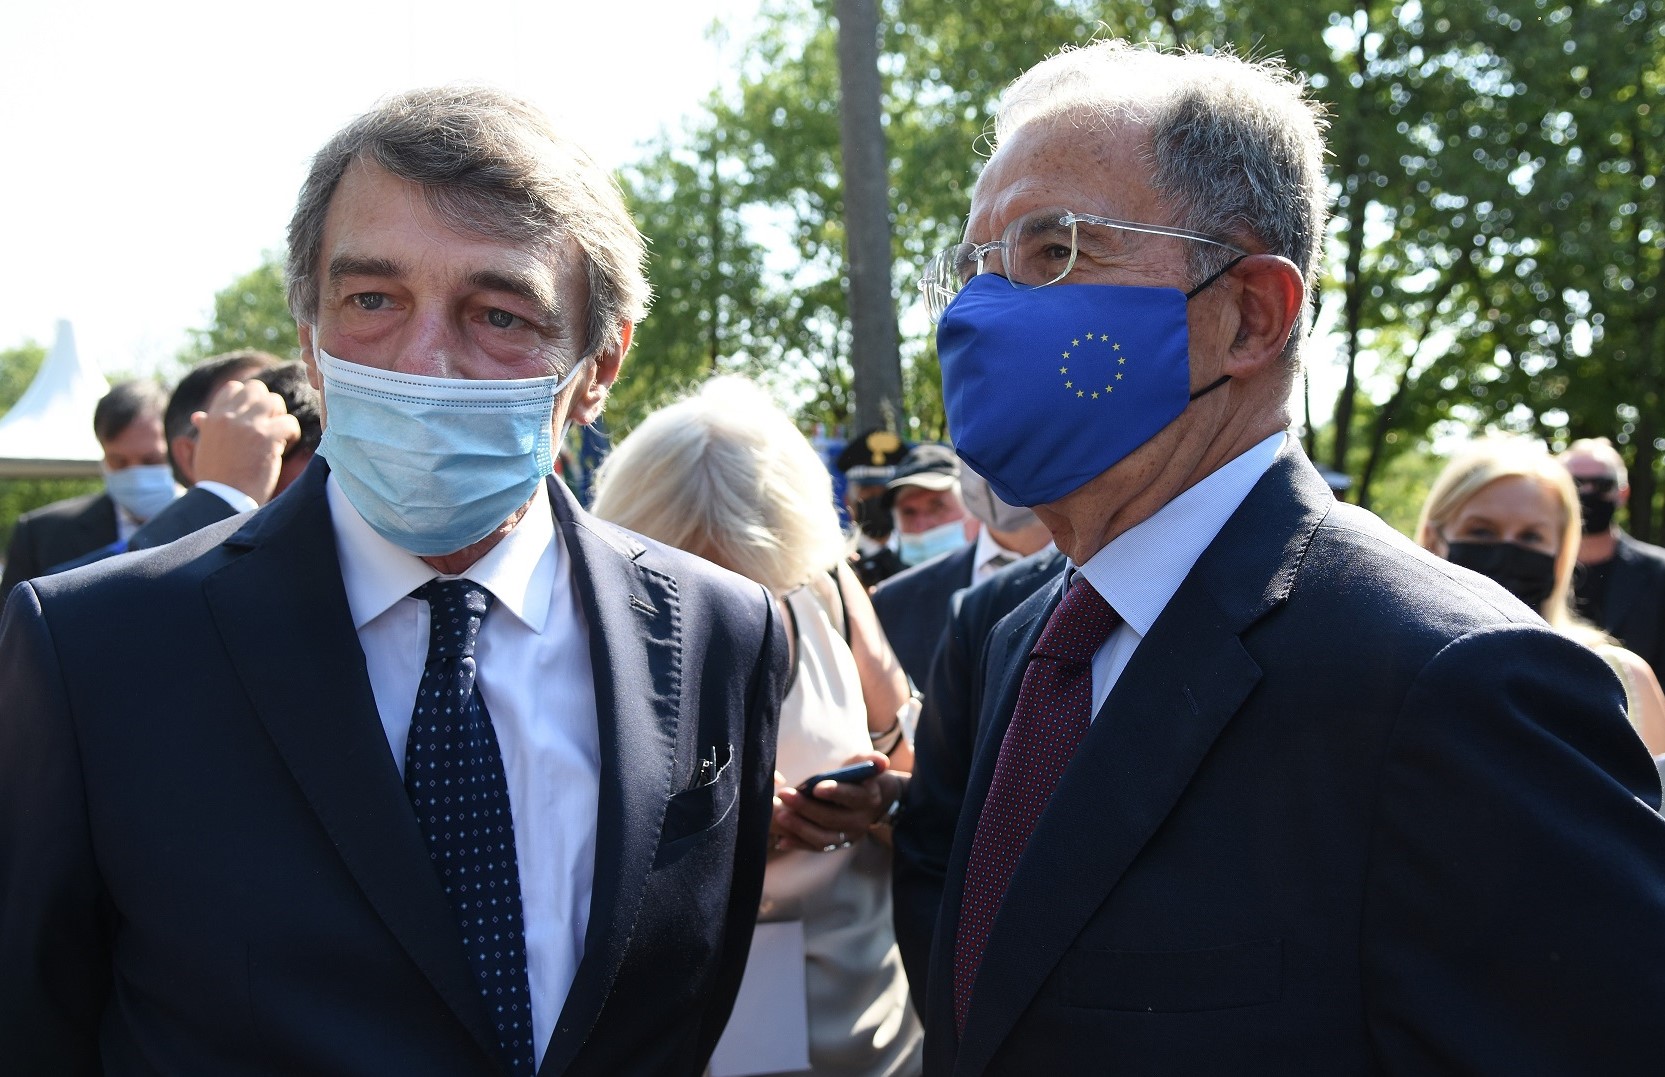 Romano Prodi ed Elly Schlein a Carpi per la Giornata dell’Europa